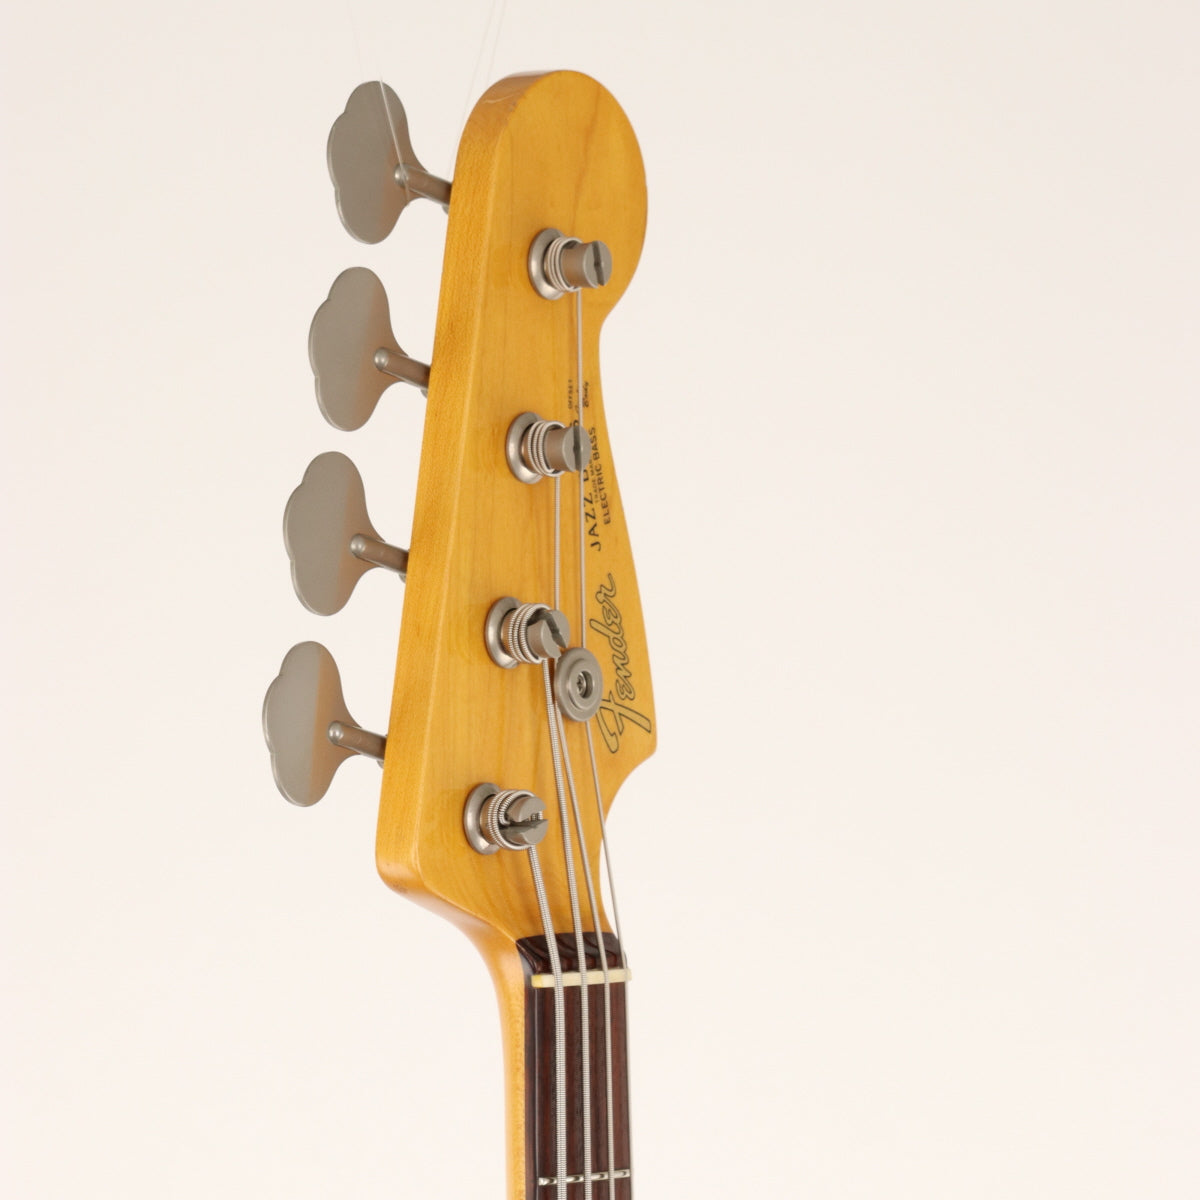 [SN CIJ  S020741] USED Fender Japan / JB62 3-Tone Sunburst [11]